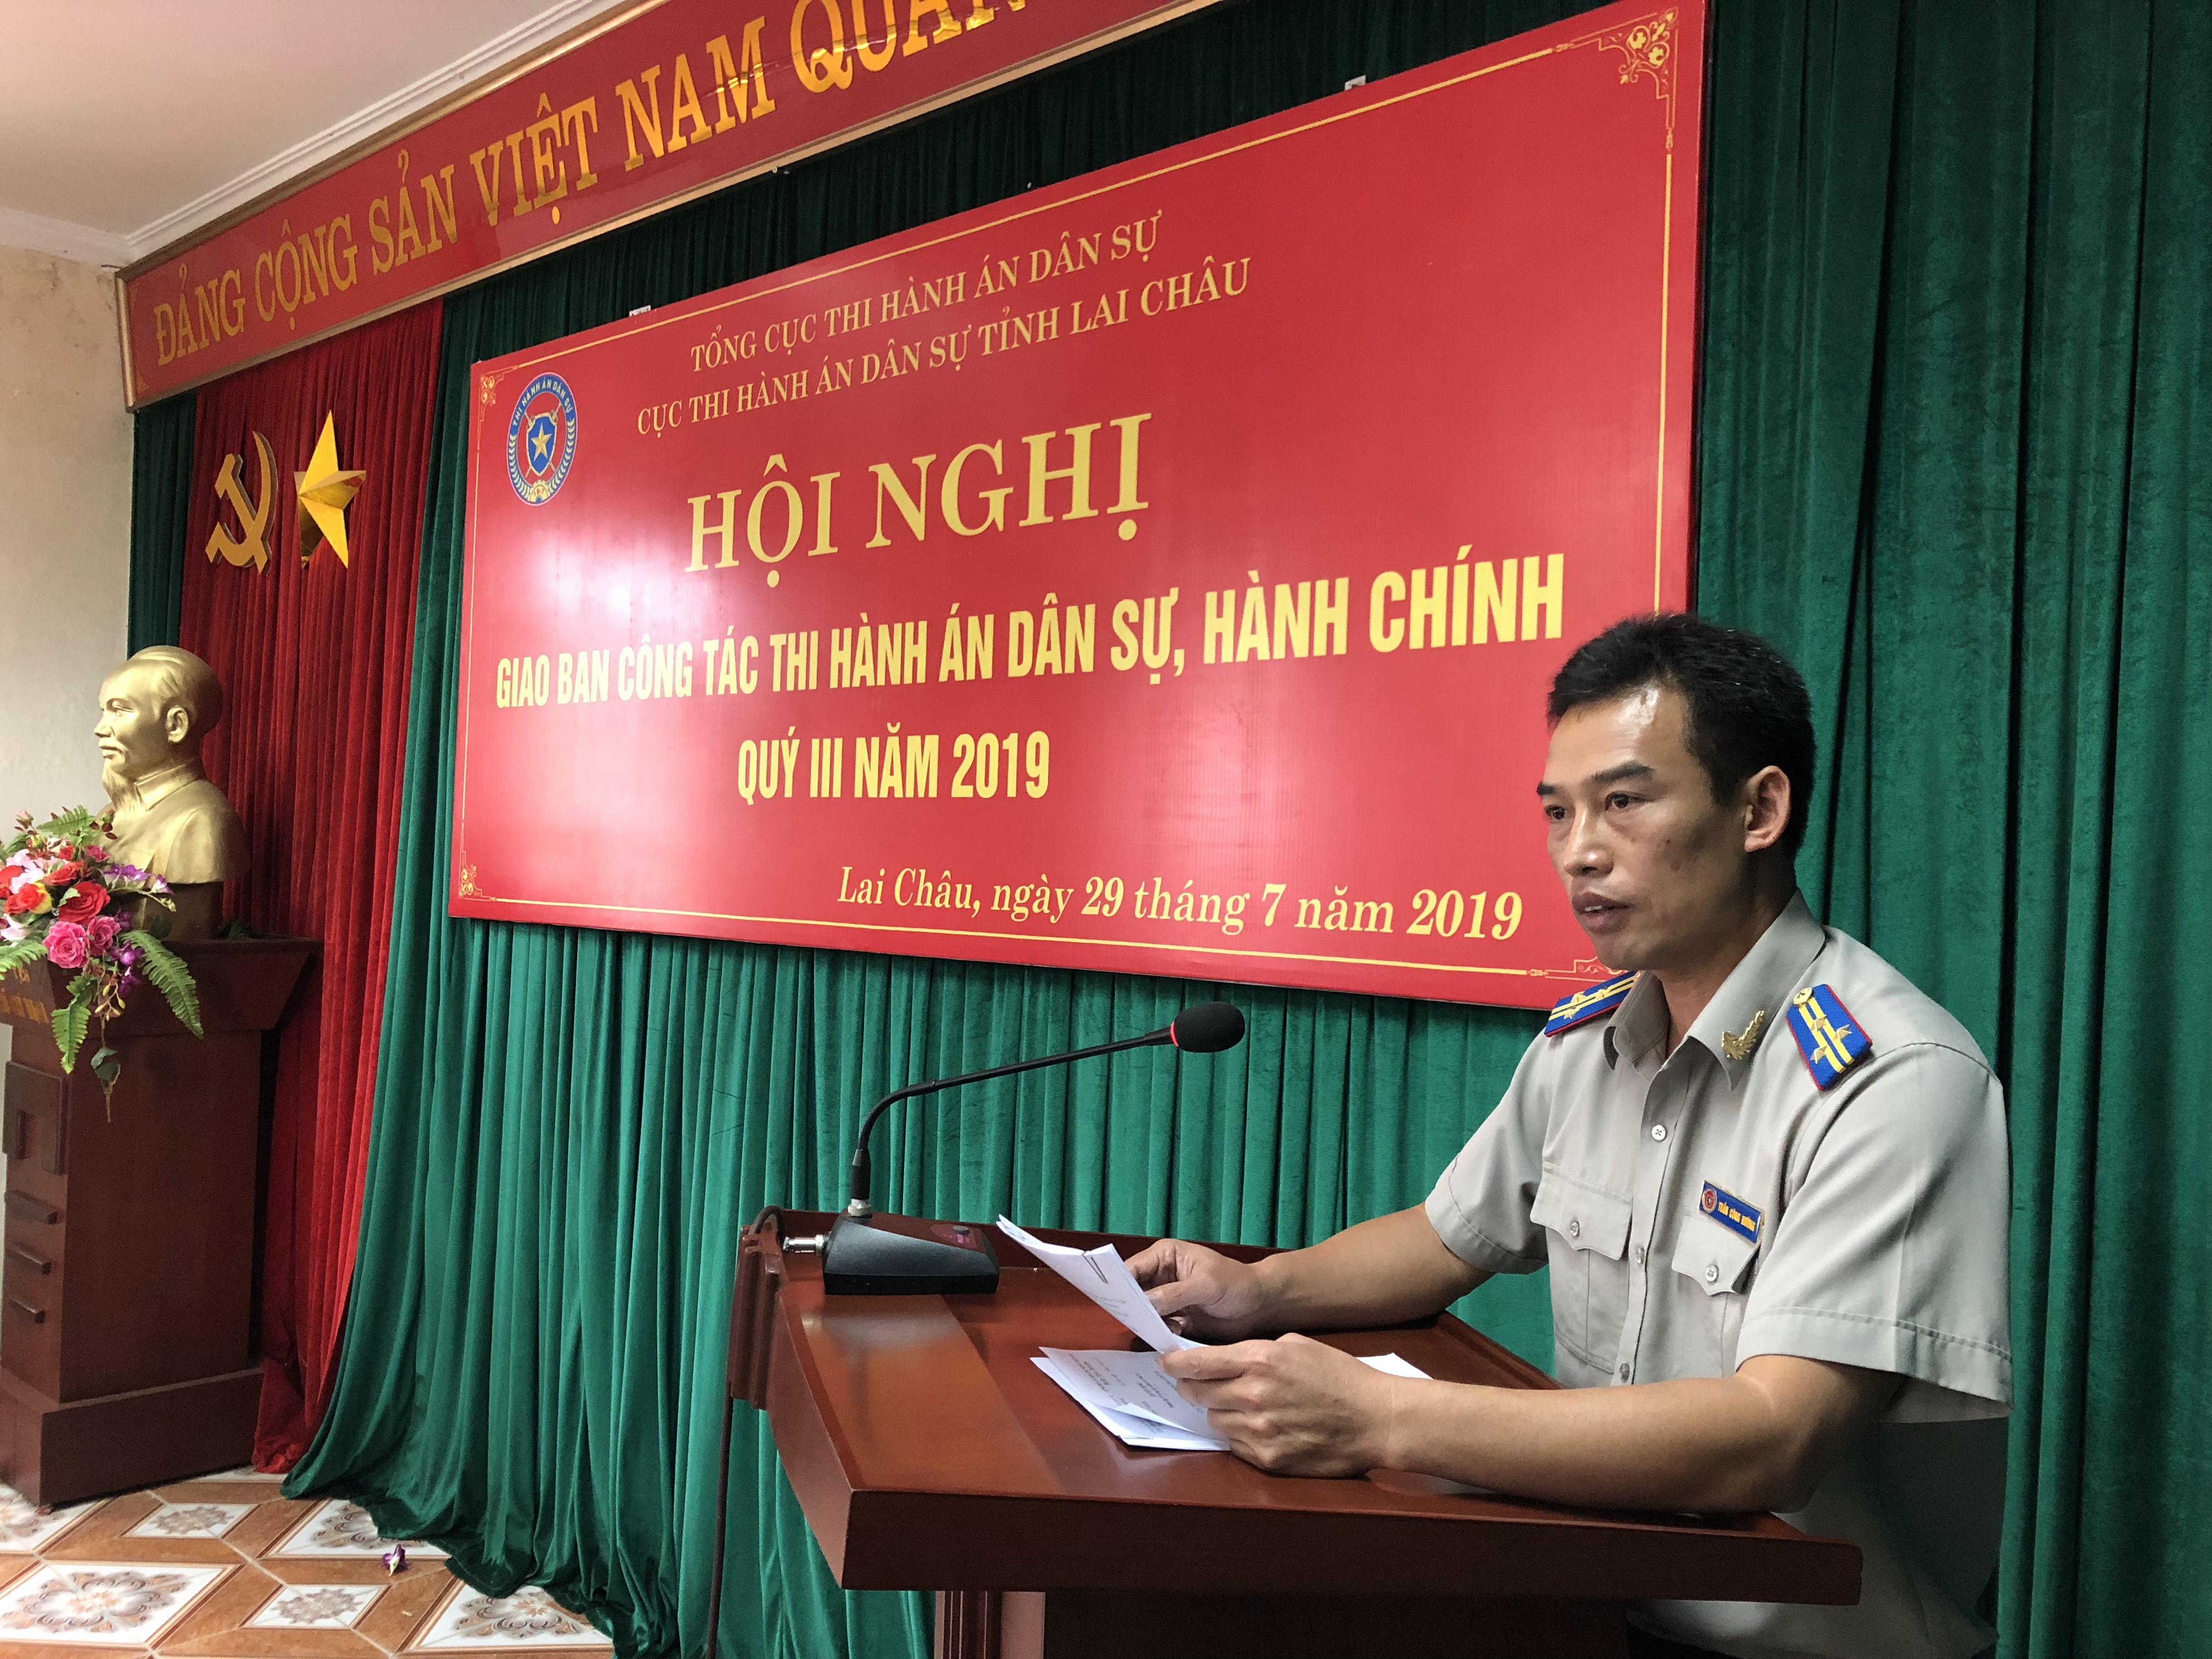 Cục Thi hành án dân sự tỉnh Lai Châu tổ chức Hội nghị giao ban  công tác thi hành án dân sự, hành chính quý III/2019